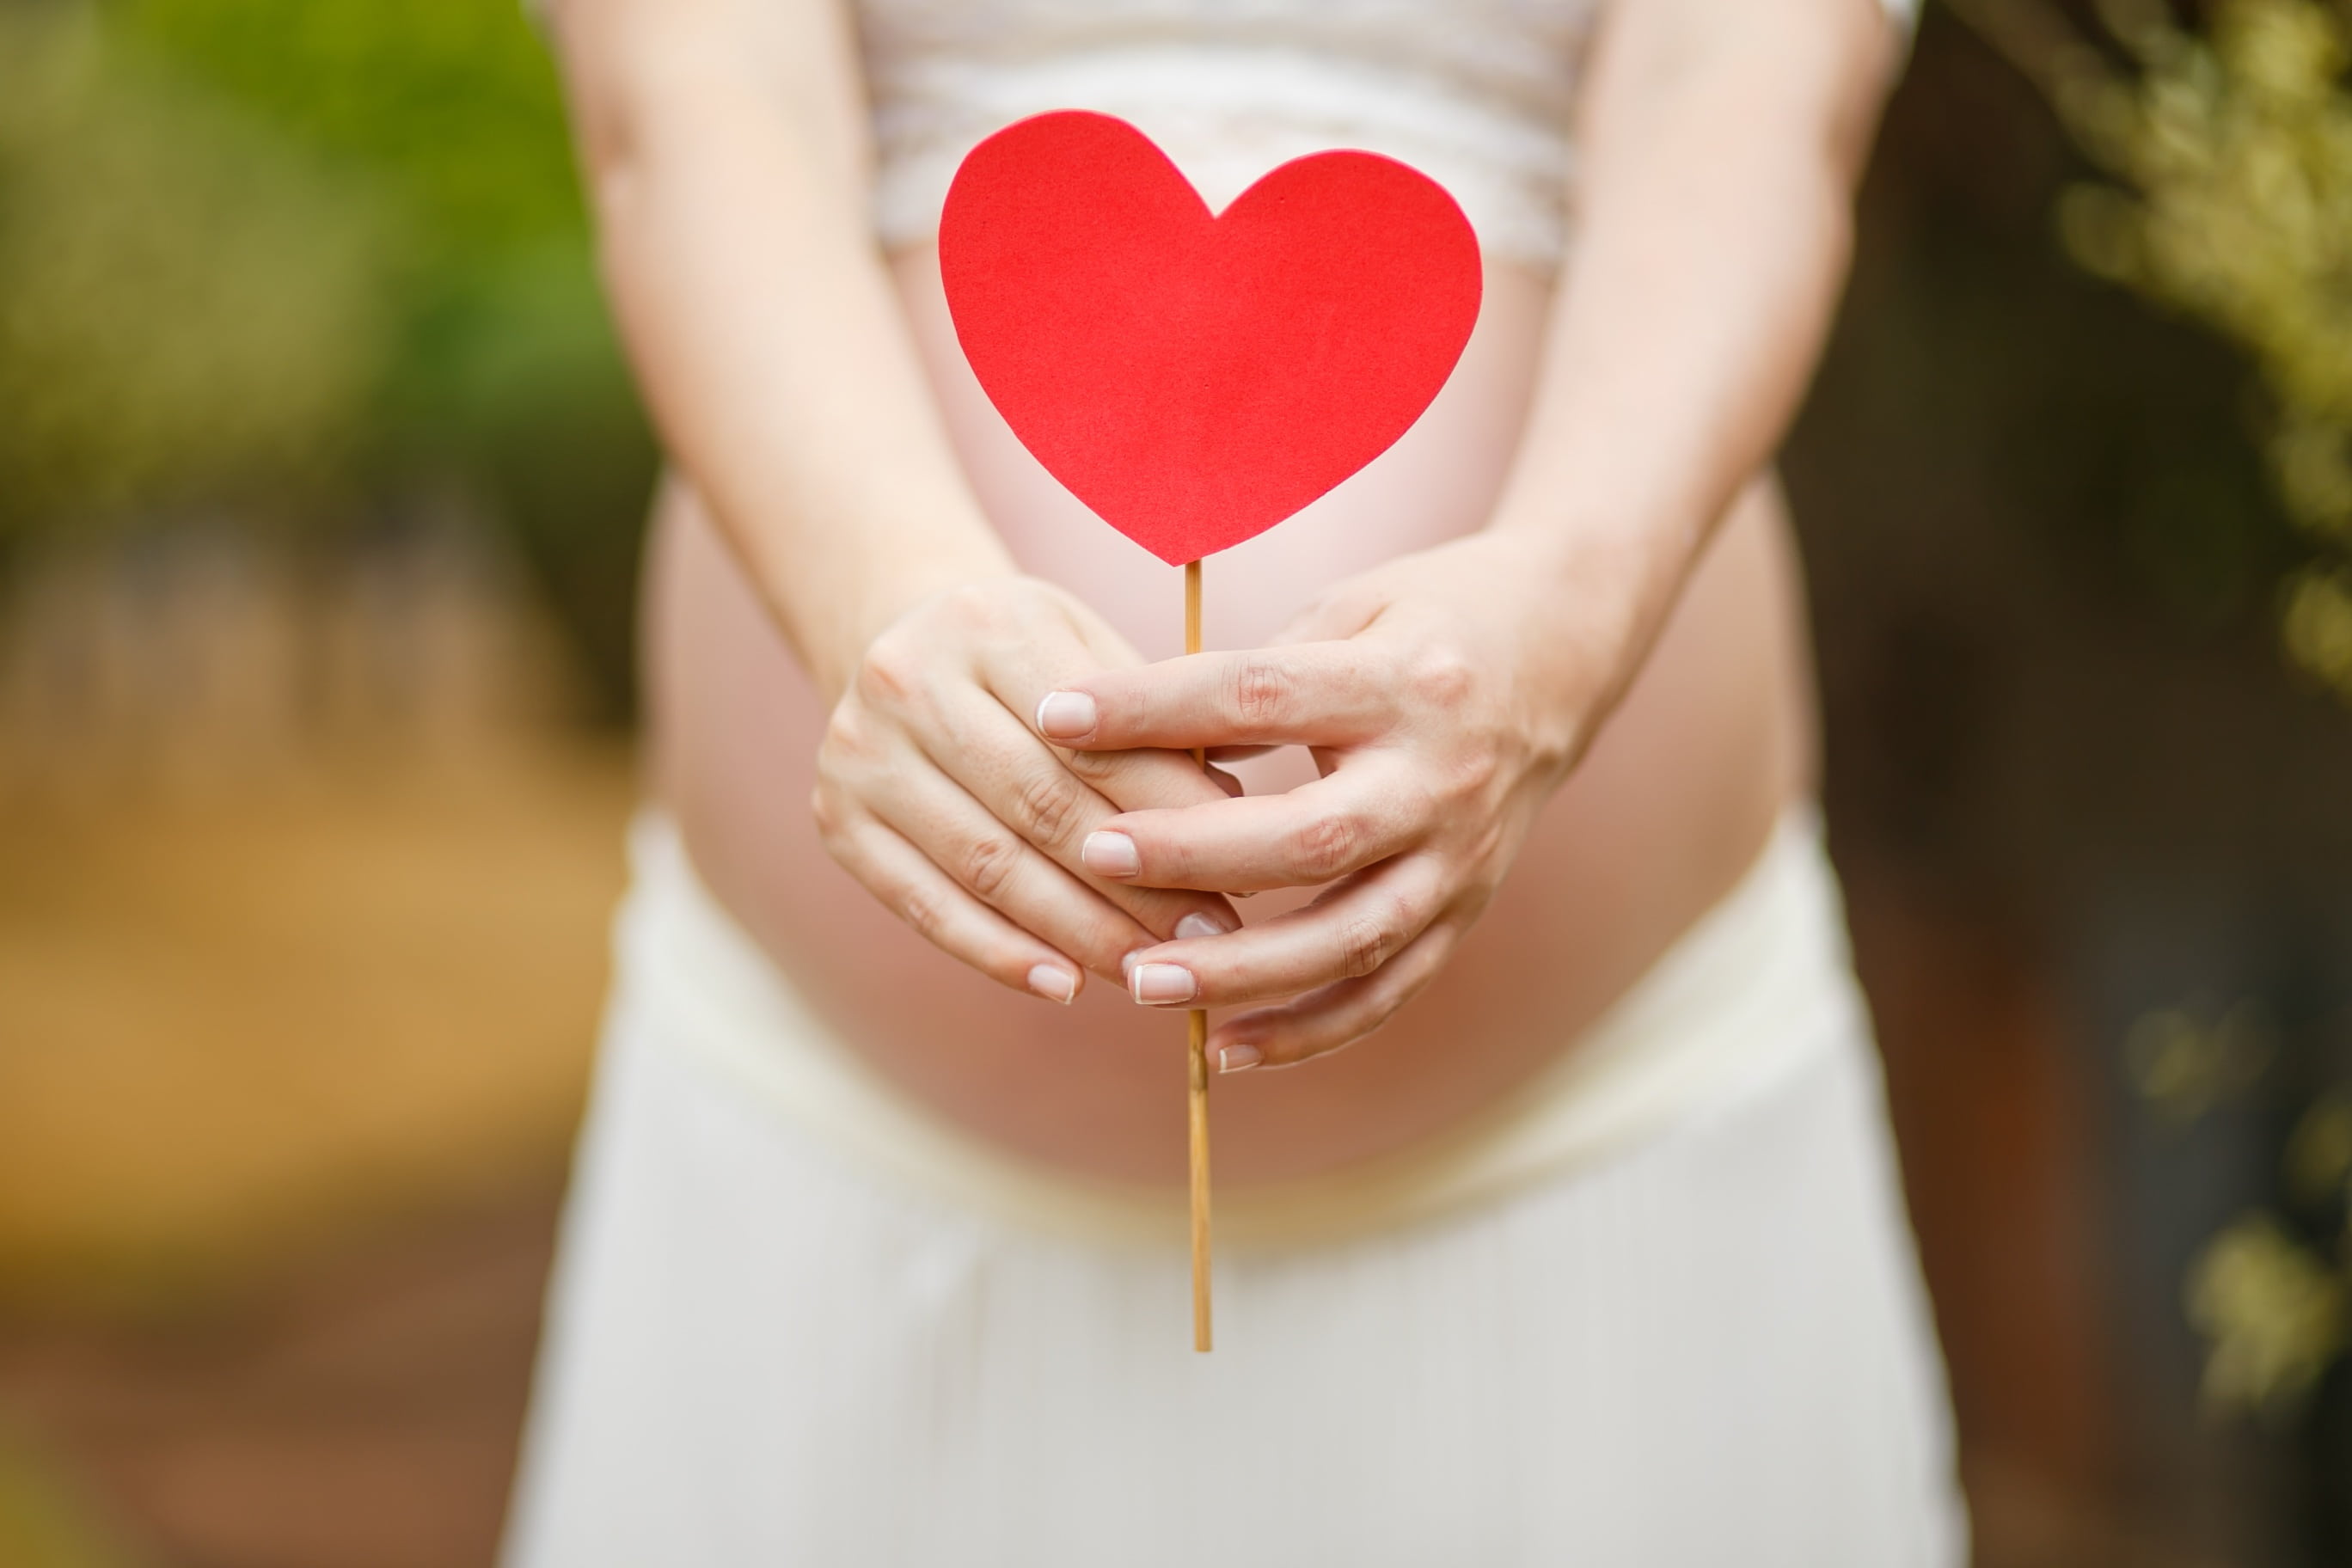 Magas vérnyomás szüléskor, Terhességi magasvérnyomás és preeklampszia - Istenhegyi Géndiagnosztika